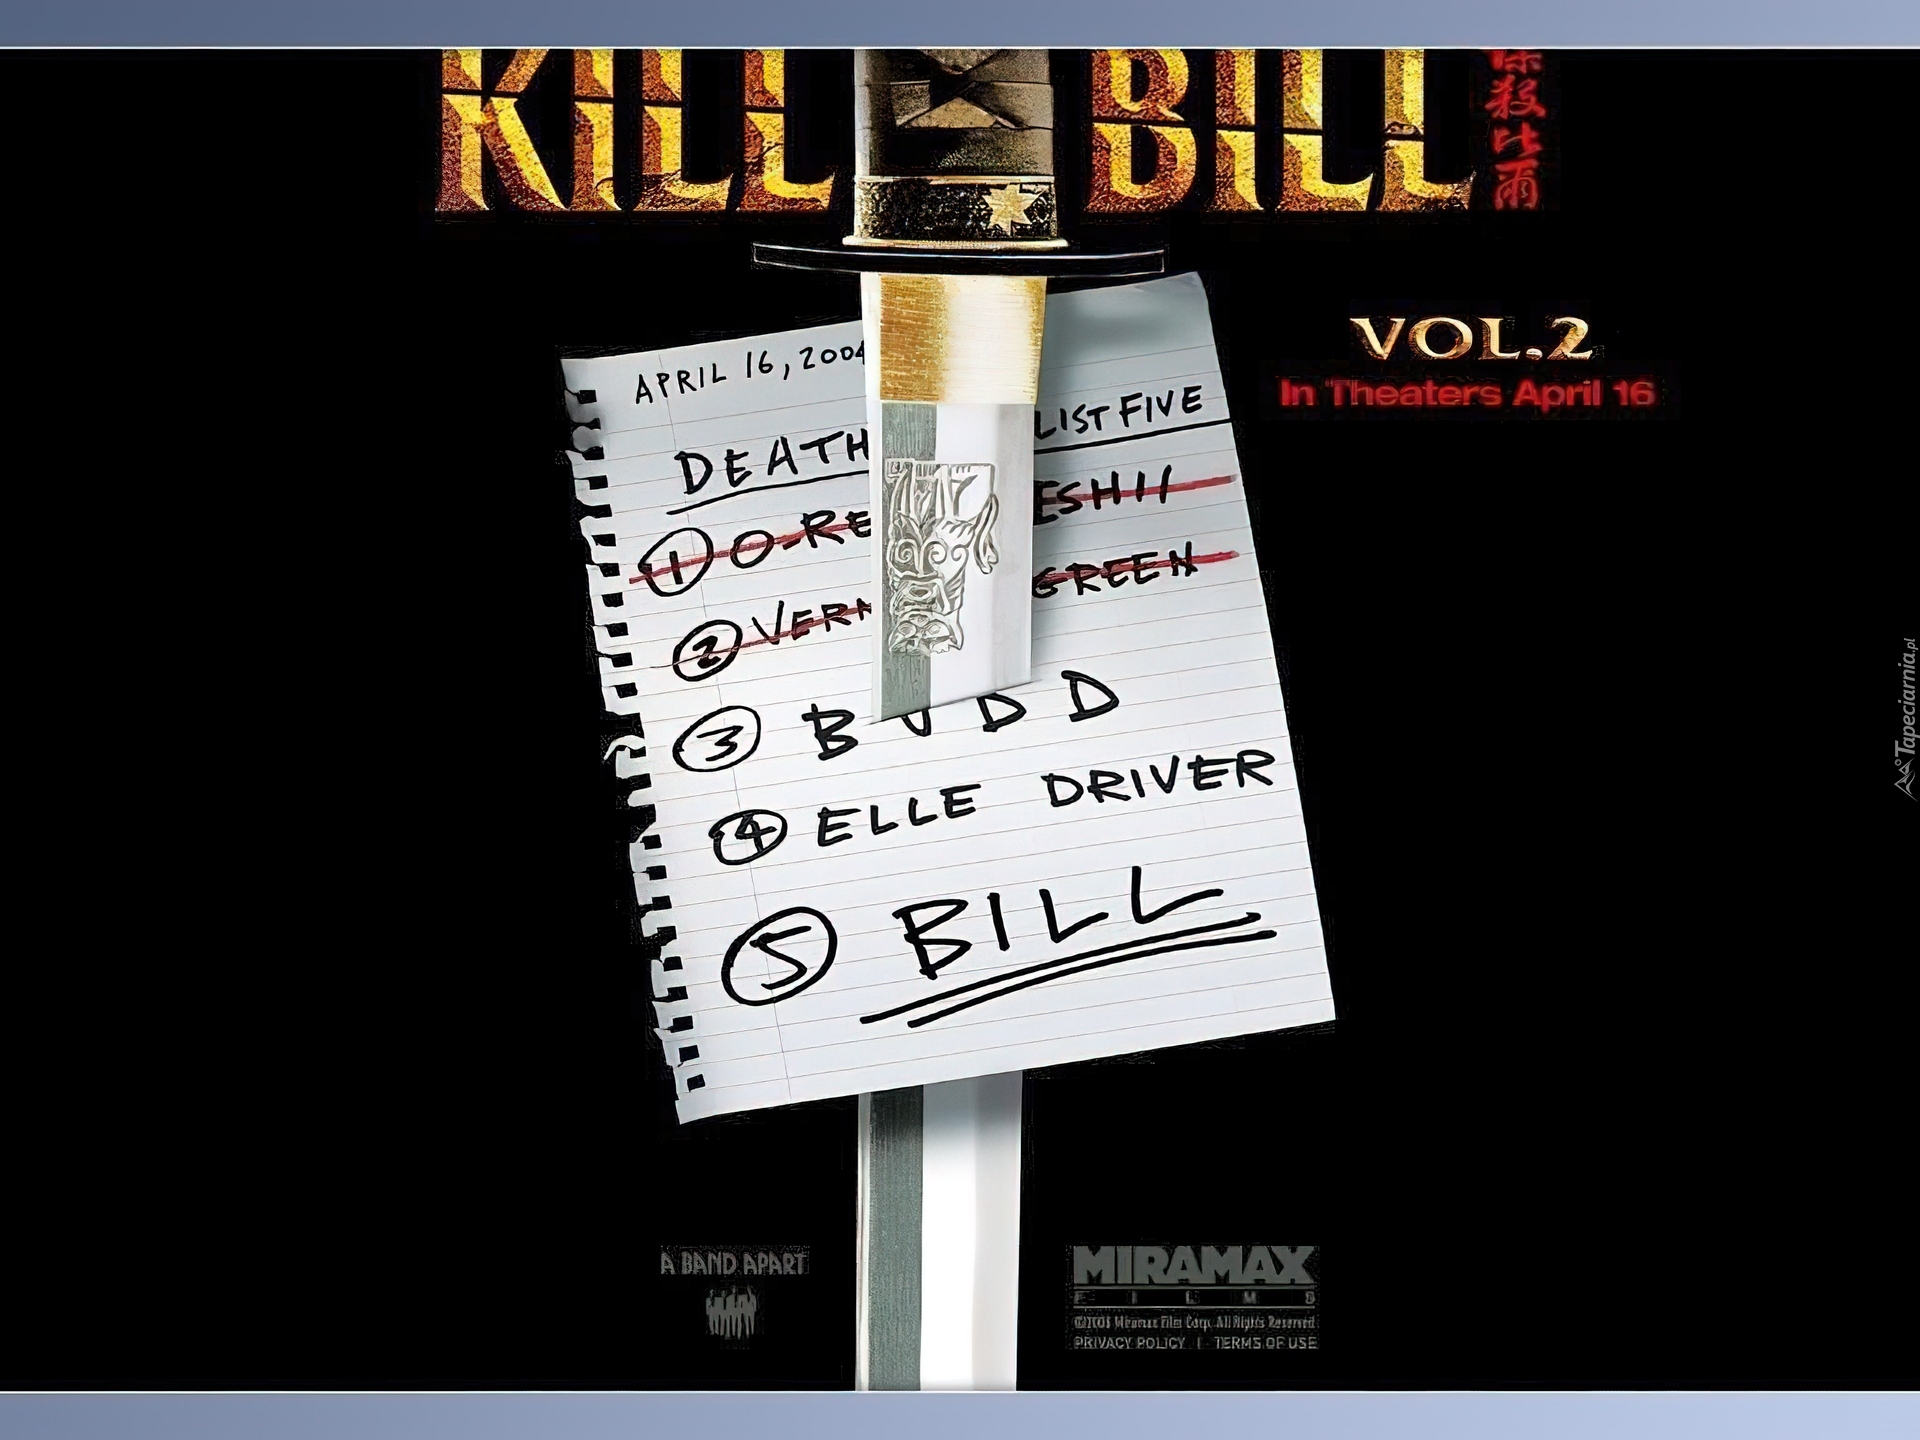 Kill Bill 2, Miecz, Lista